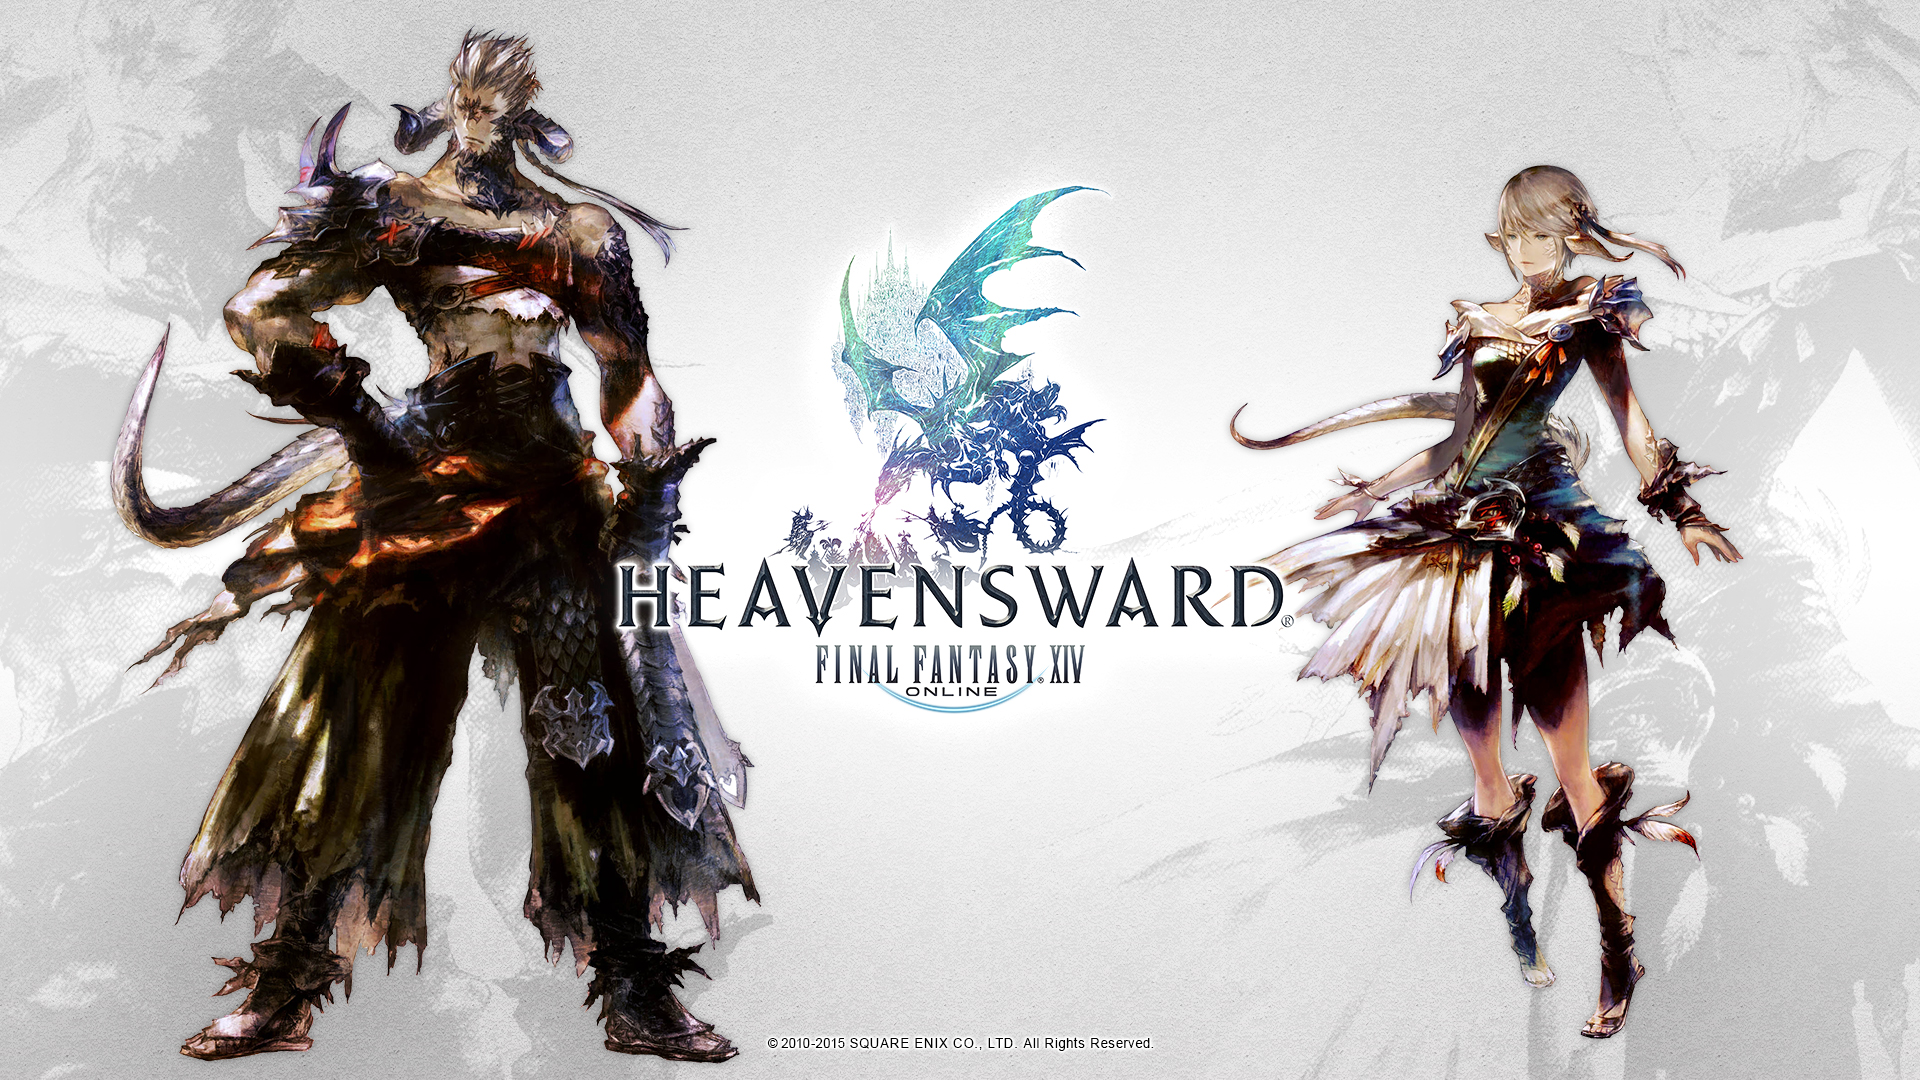 Final square enix. Final Fantasy 14 Heavensward. Раса Аура Final Fantasy. Final Fantasy Final Fantasy XIV.